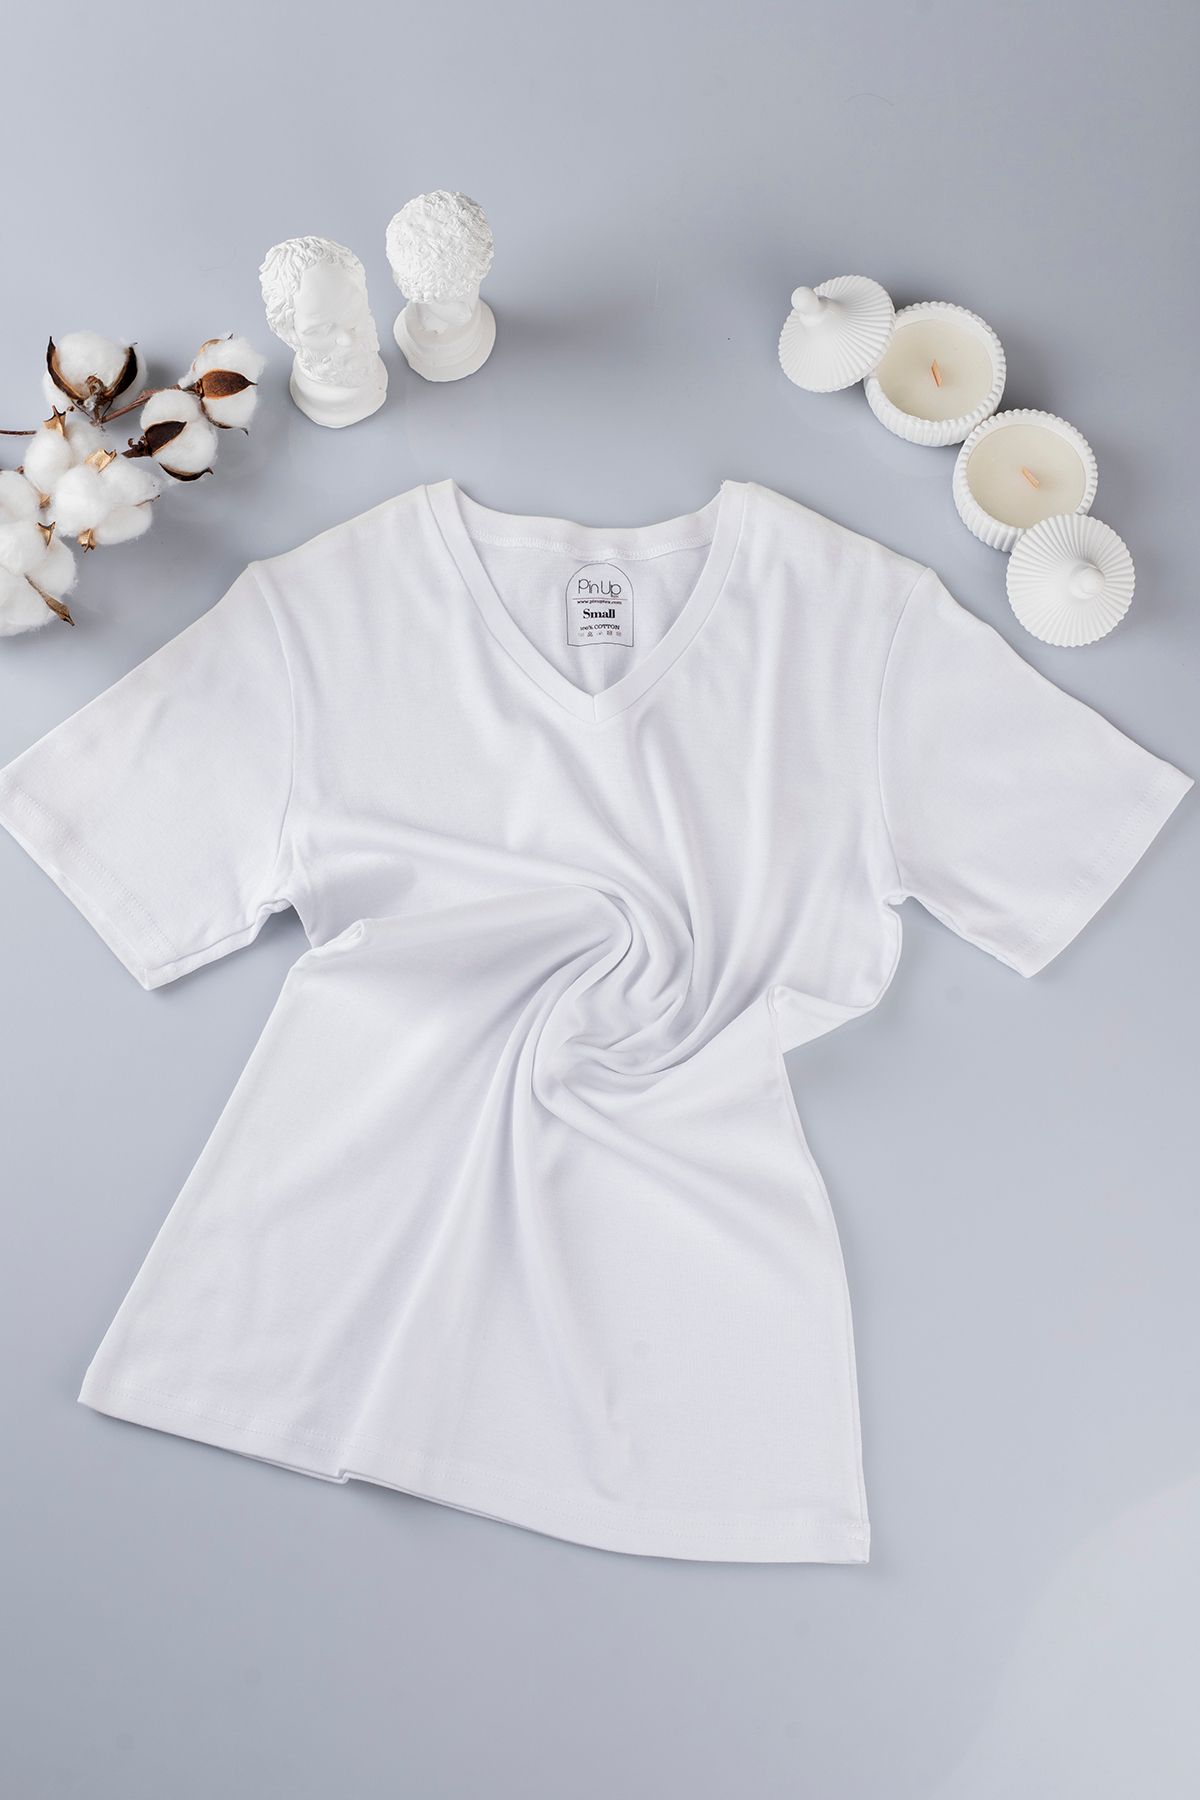 AYD UNDERWEAR %100 Pamuk Erkek Beyaz V Yaka T-shirt / Fanila